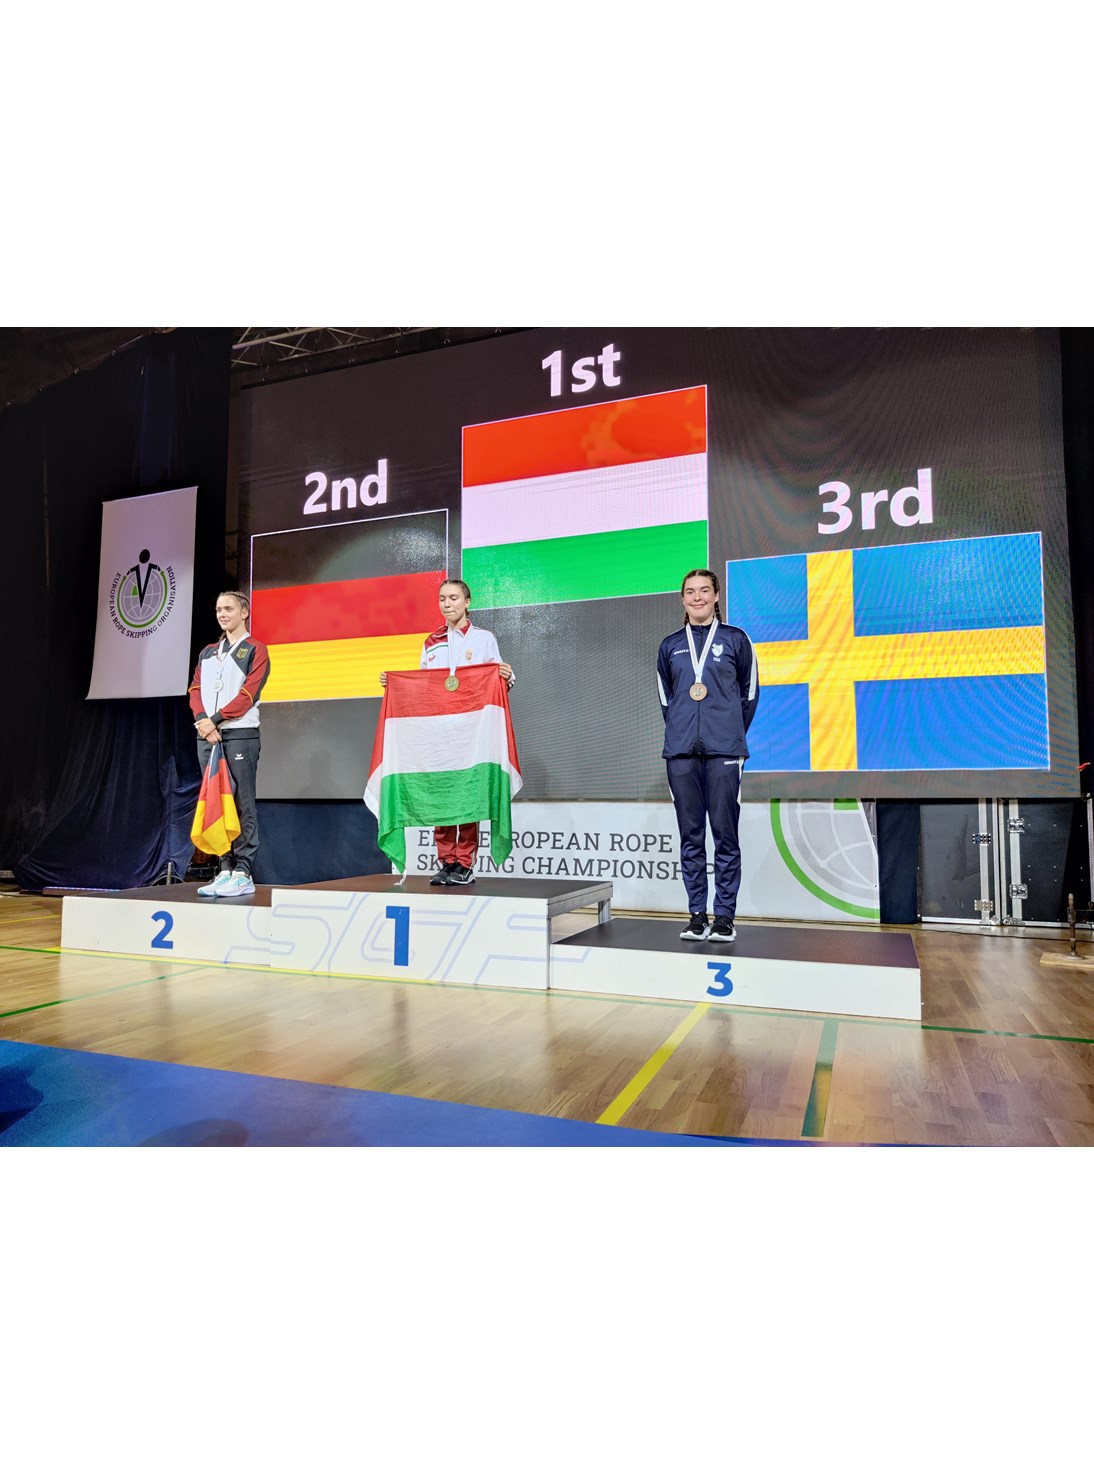 Prispall med svensk tävlande på 3:e plats. Landsflaggor i bakgrunden.